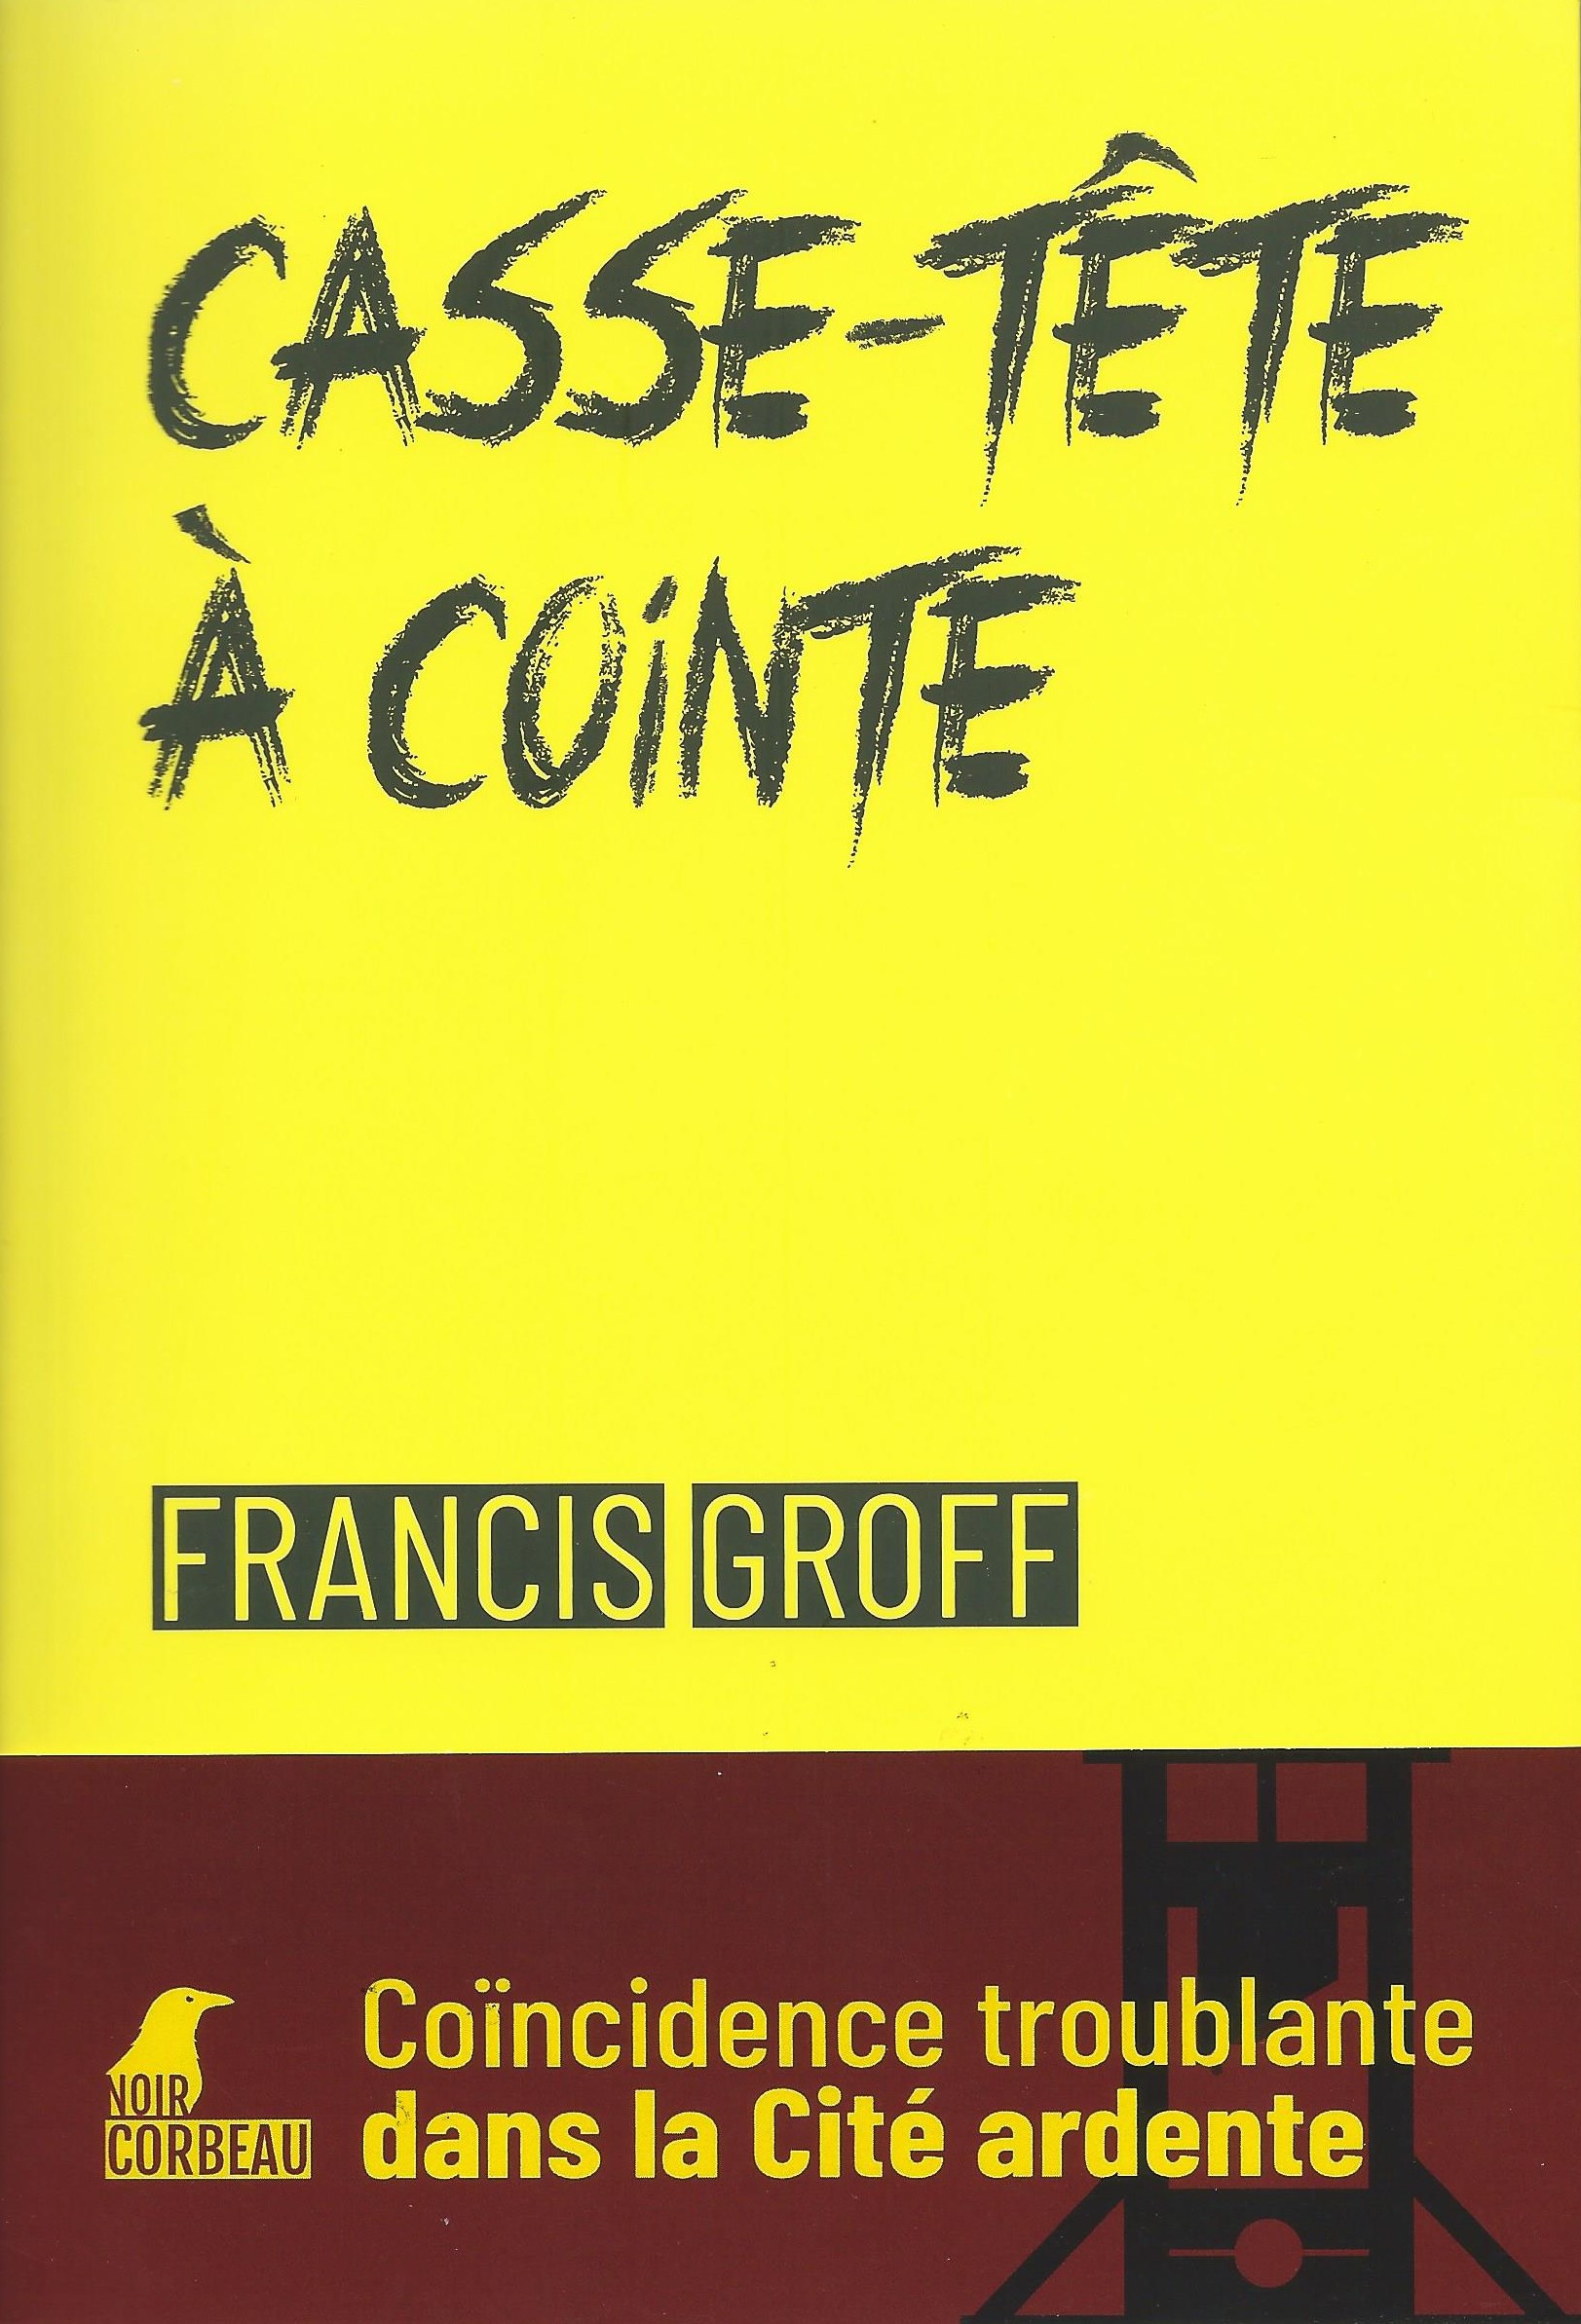 FRANCIS GROFF - Casse-tête à Cointe